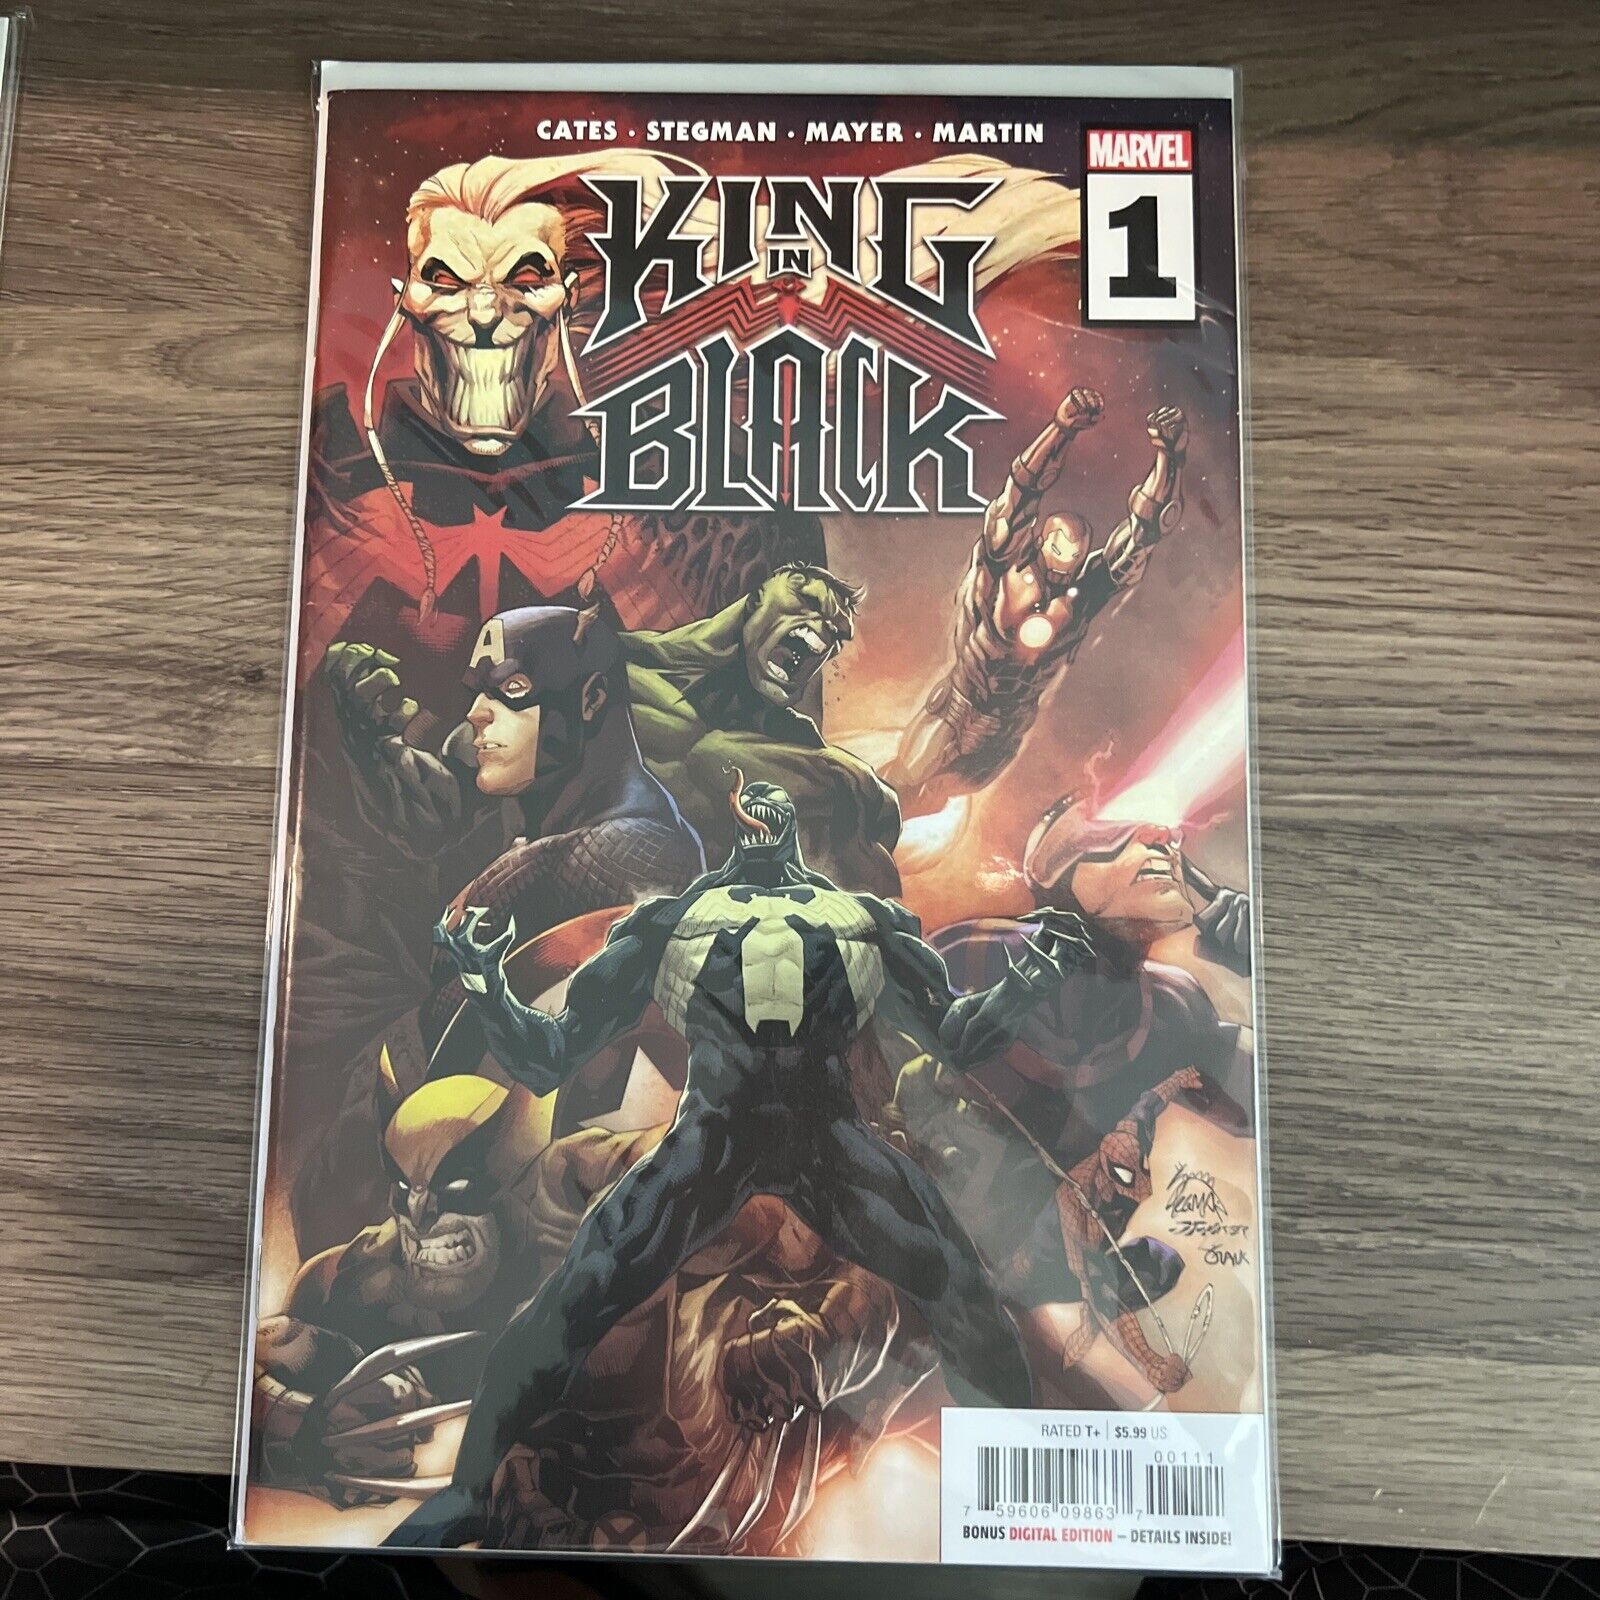 King in Black #1 (Marvel Comics February 2021)